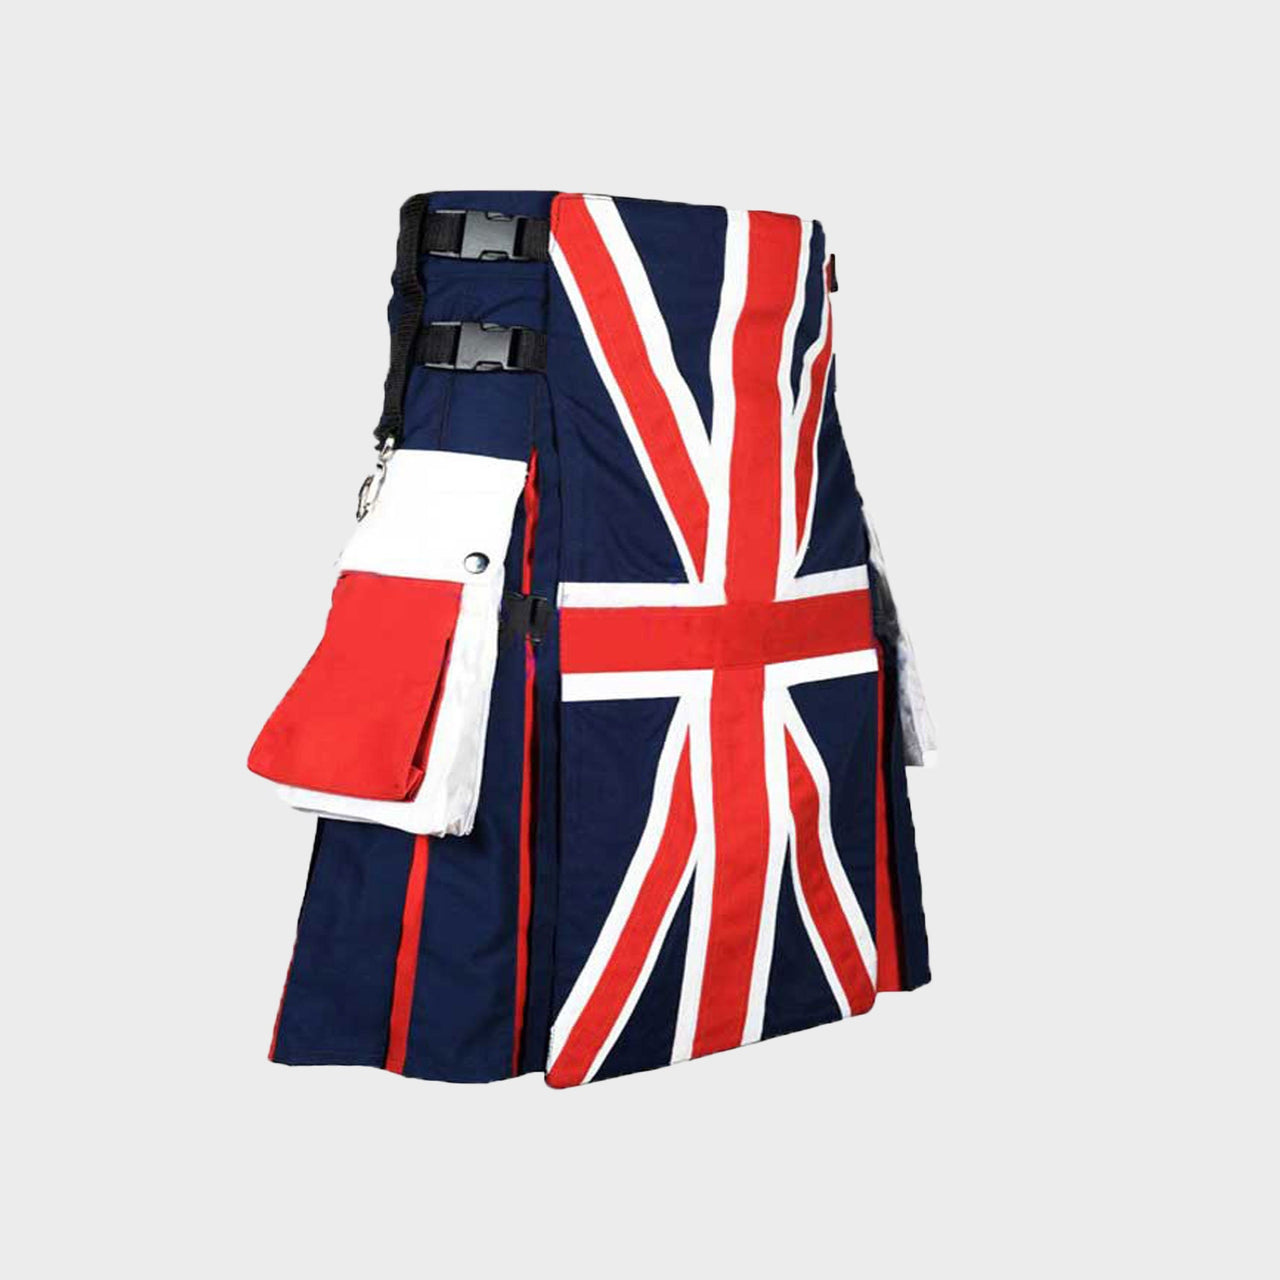 Handmade Great Union Flag Hybrid Kilt British Flag Kilt - Hybrid Utility Cotton Kilt - Scottish Kilt for Men - Country Flag Kilt